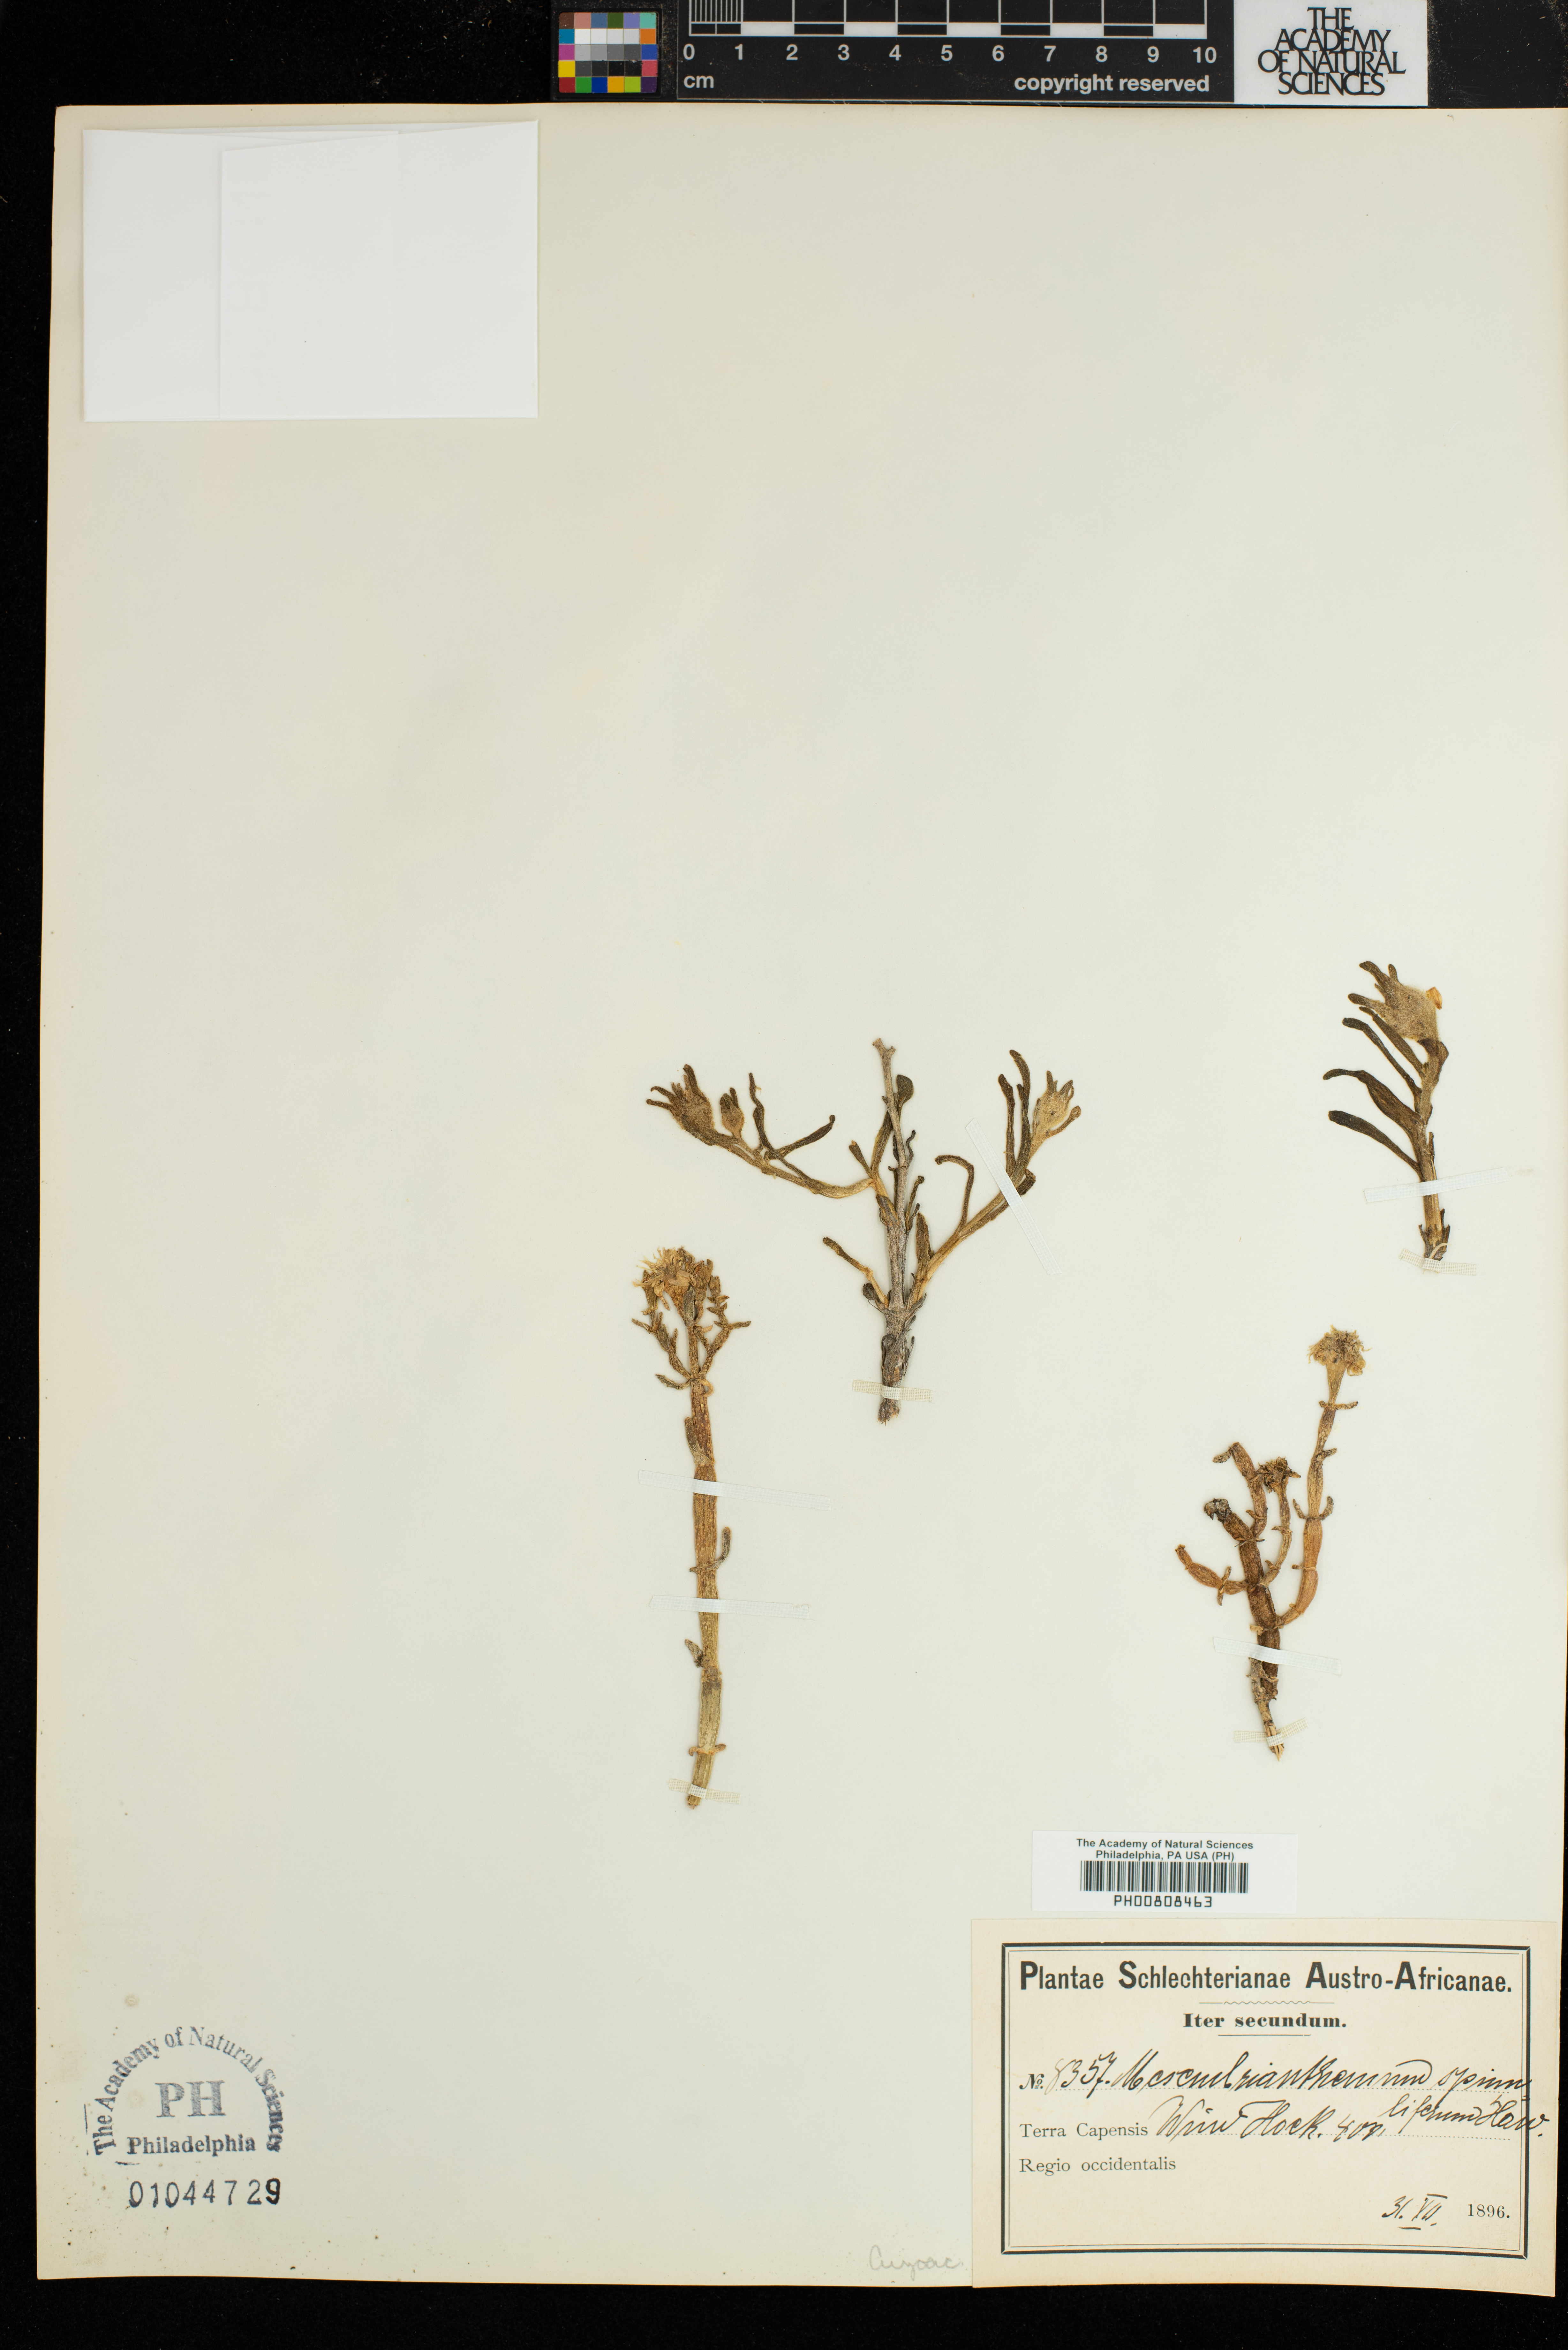 Mesembryanthemum image